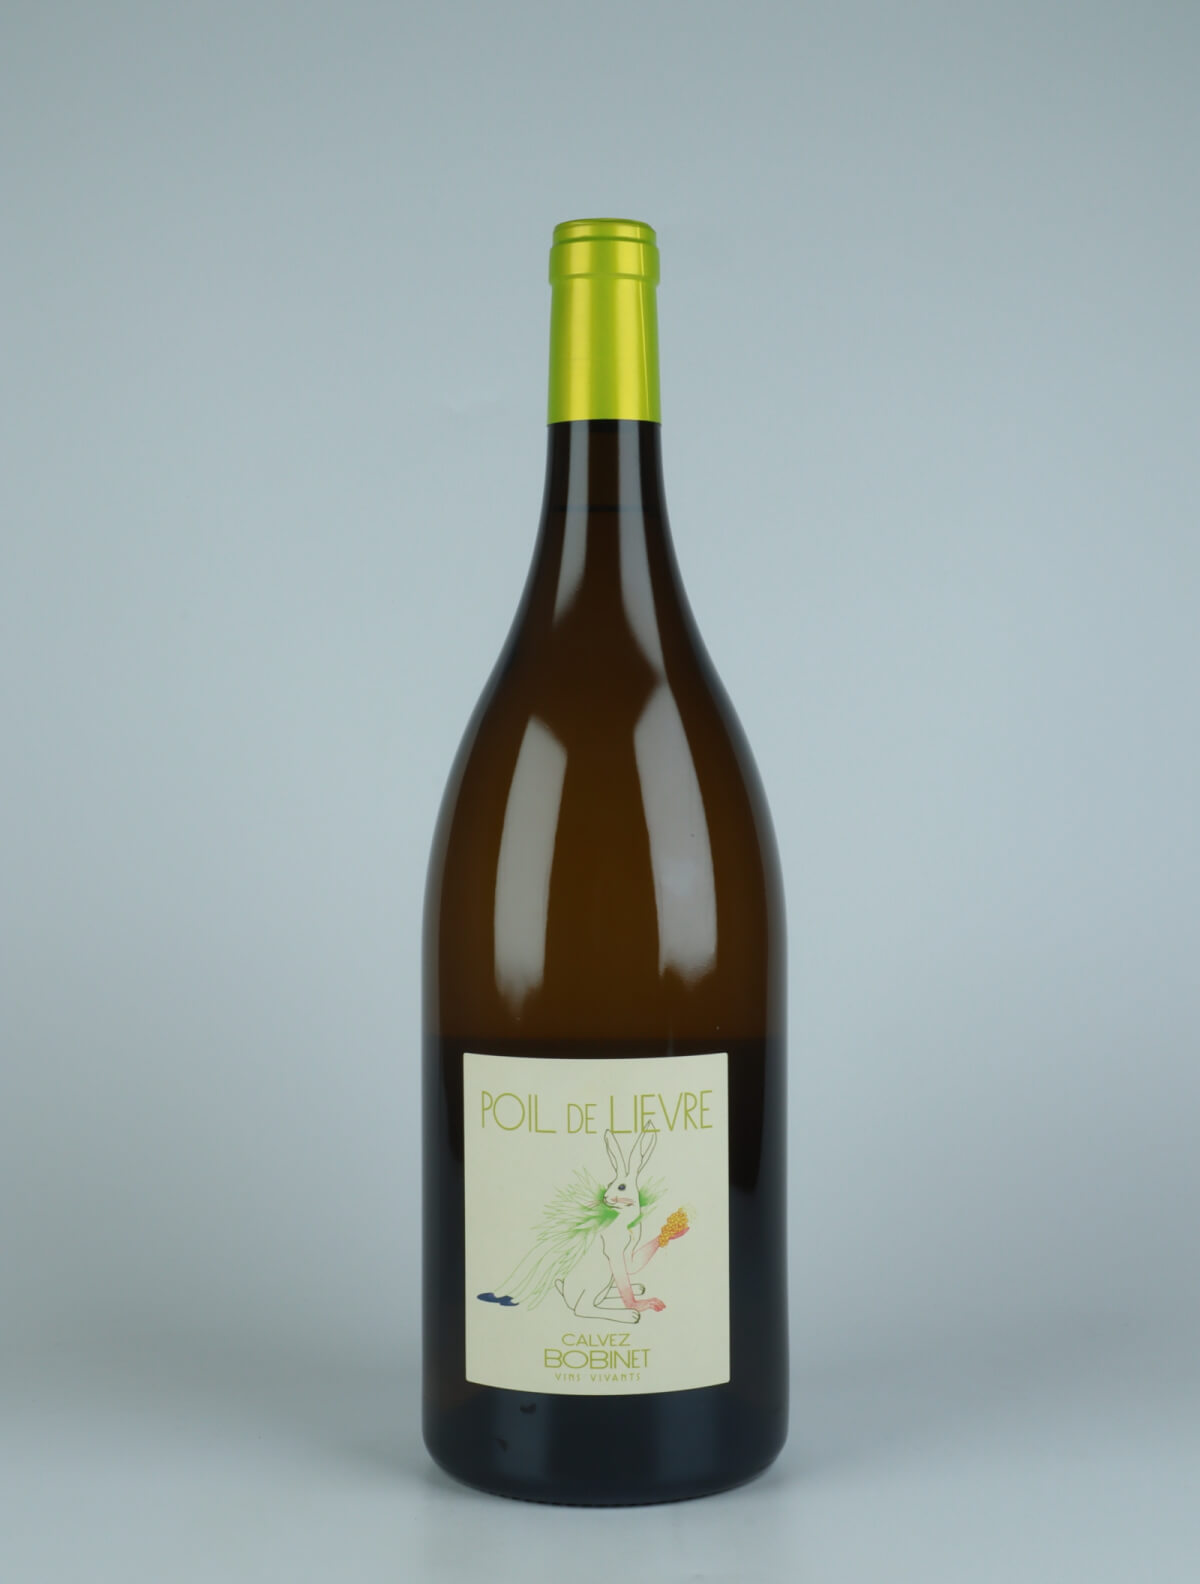 A bottle 2022 Poil de Lievre White wine from Domaine Bobinet, Loire in France